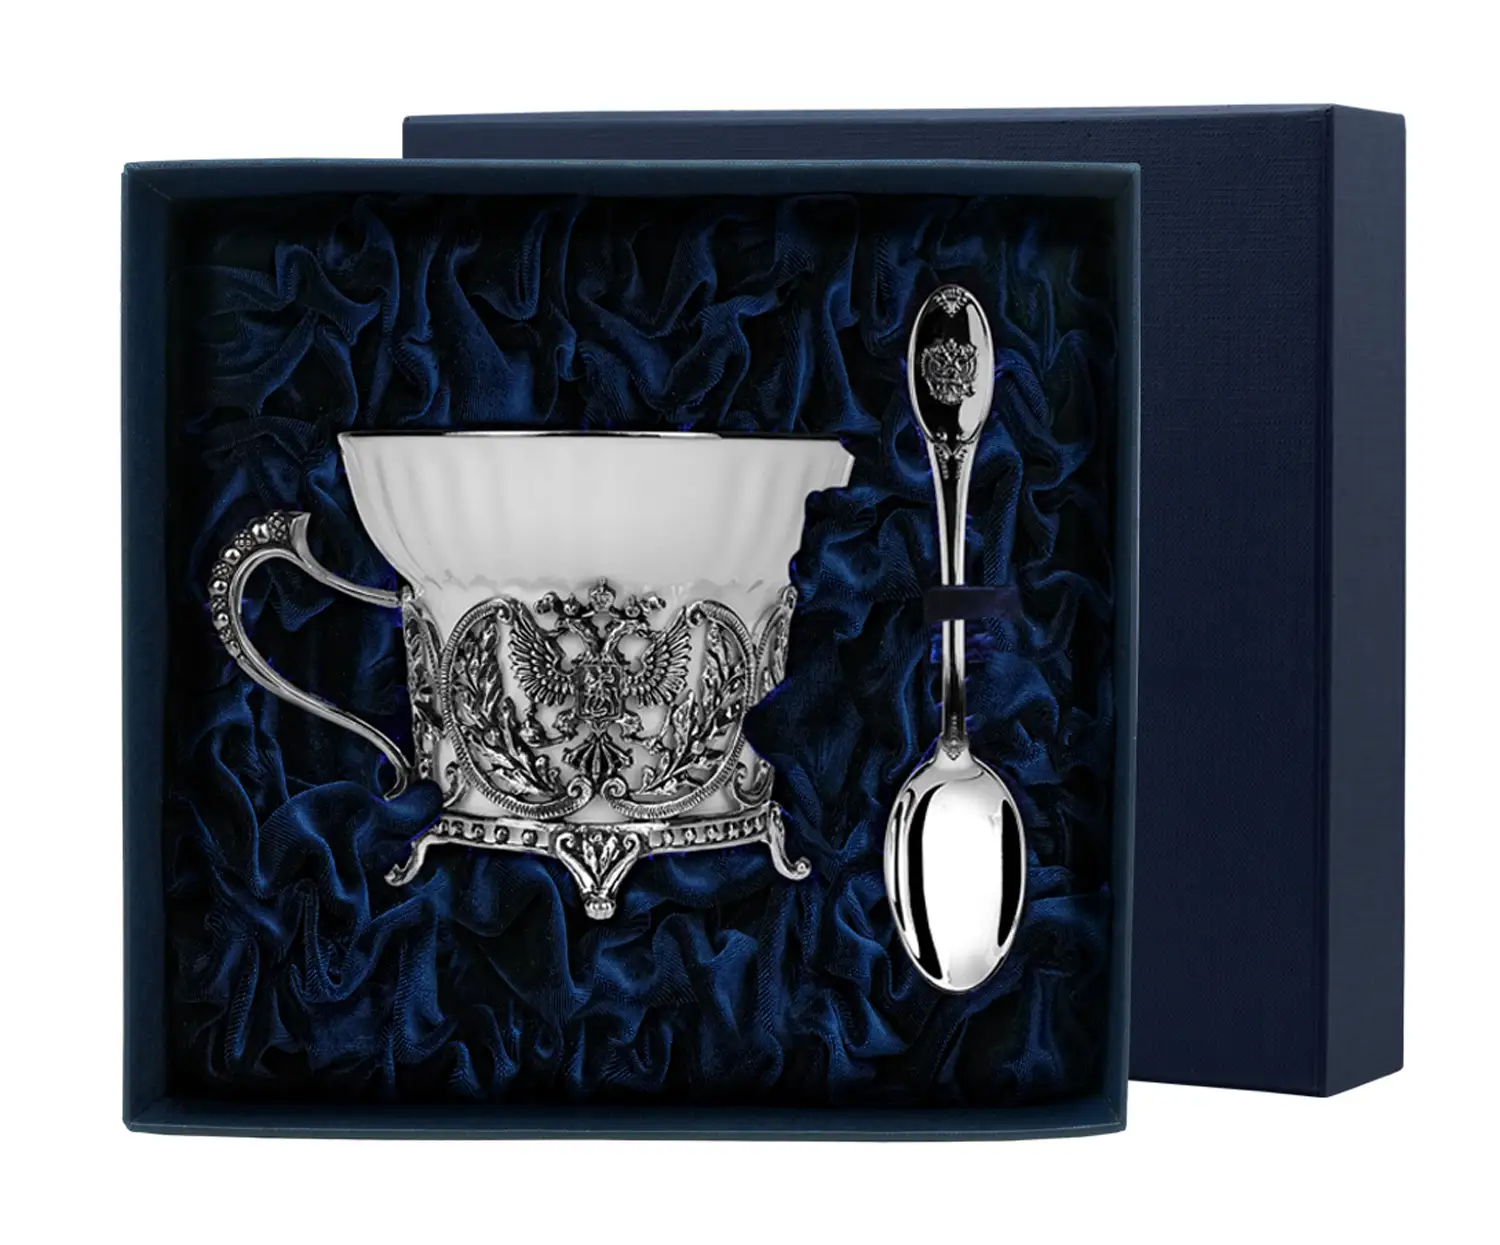 Набор чайная чашка Герб: ложка, чашка (Серебро 925) набор чайная чашка лебедь ложка чашка серебро 925